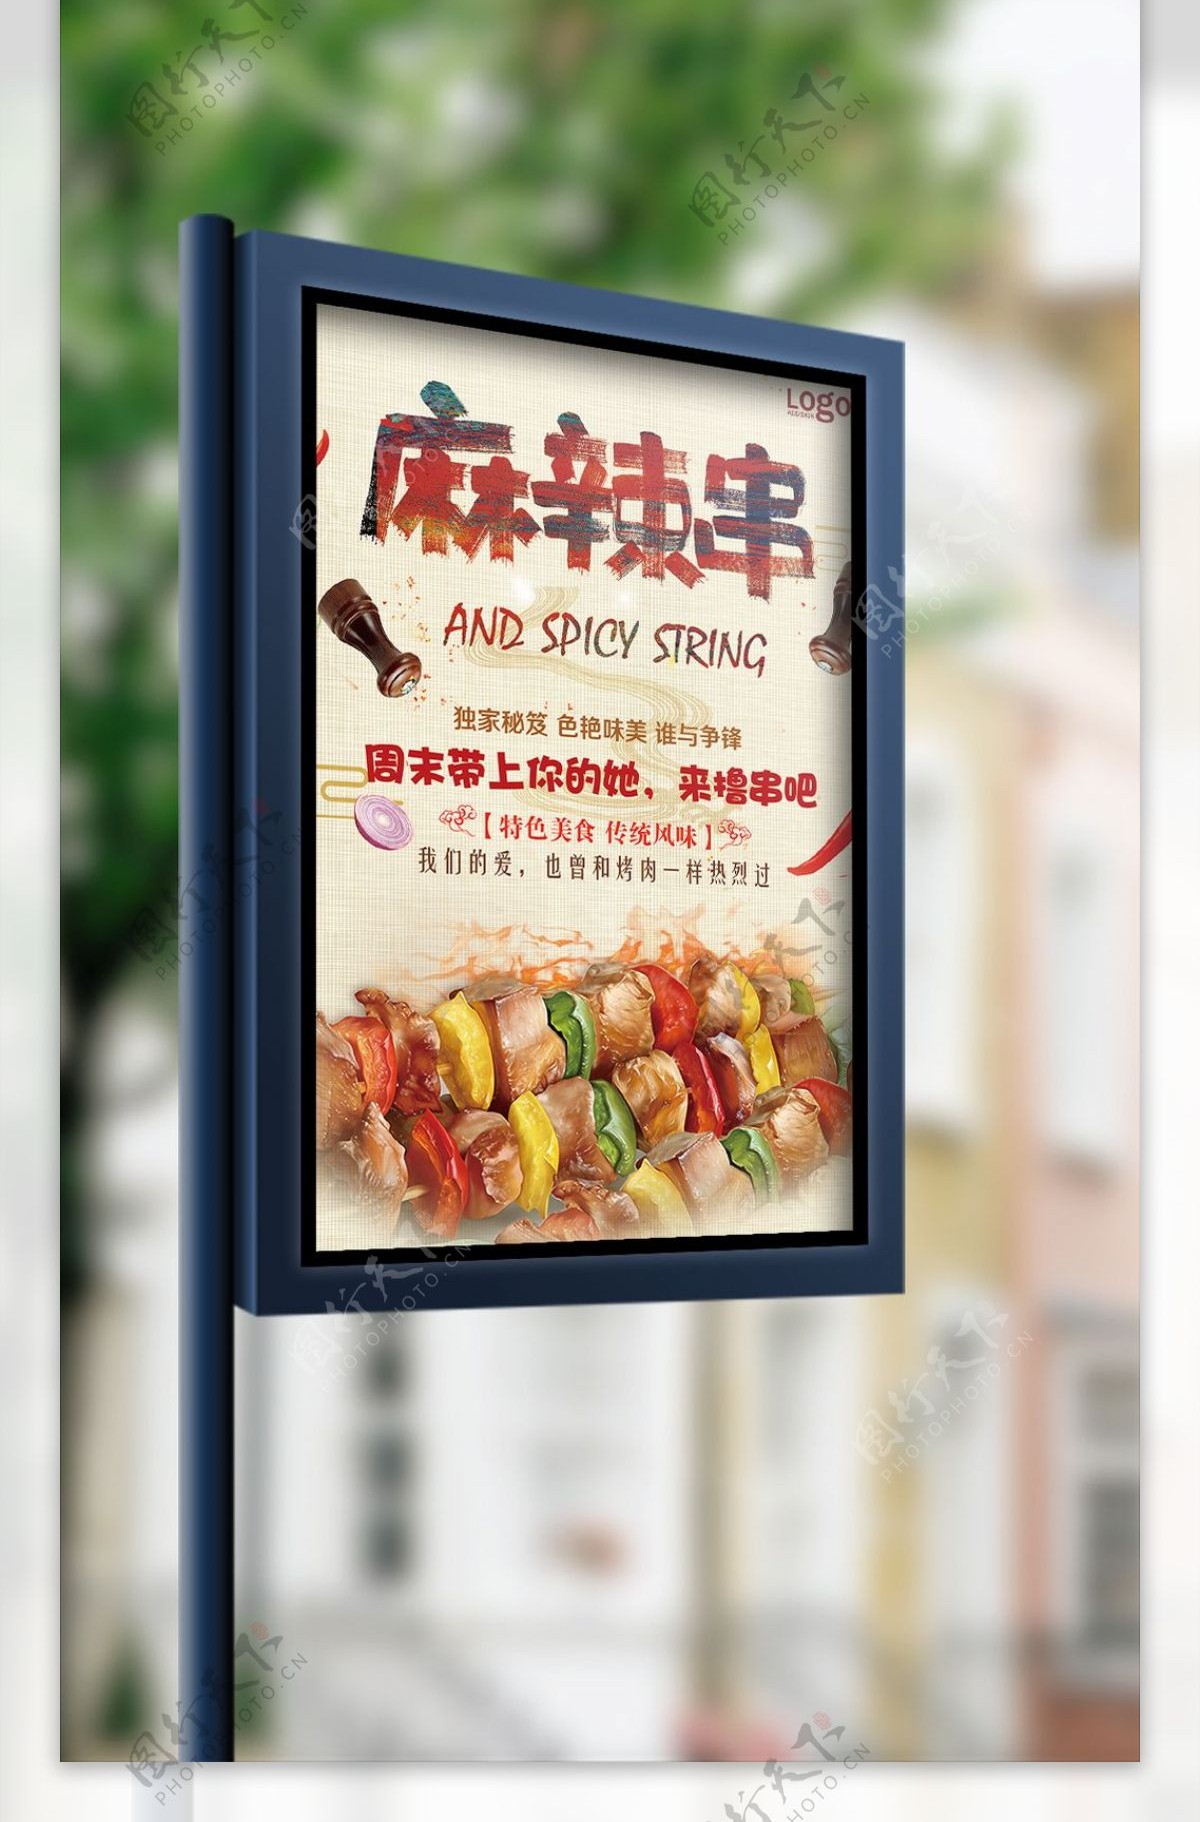 撸串烧烤啤酒节夜市大排档美食餐饮海报